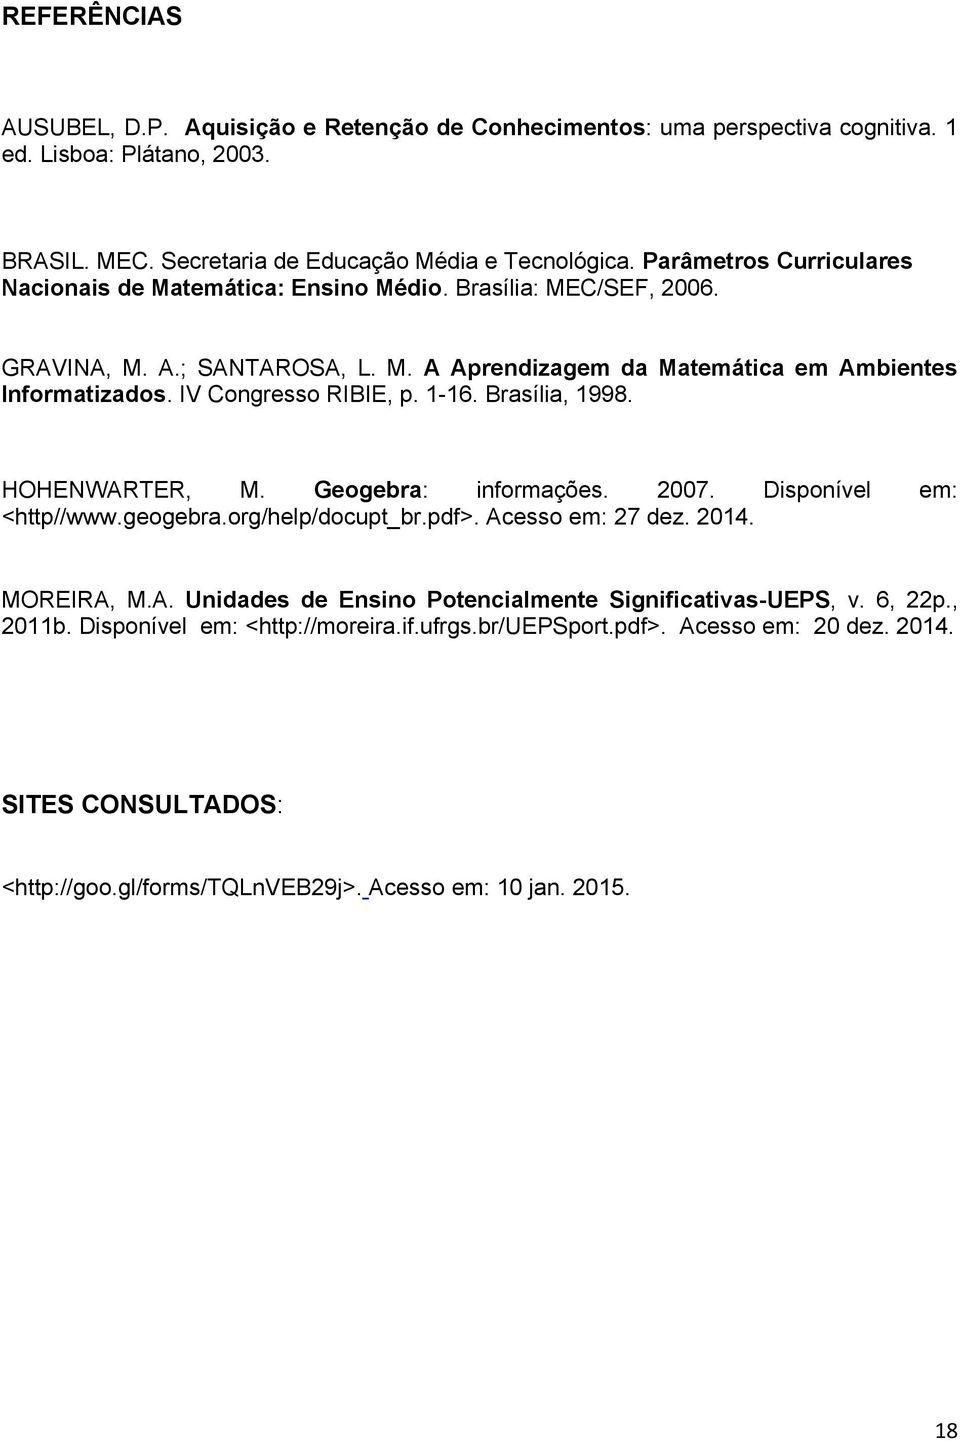 IV Congresso RIBIE, p. 1-16. Brasília, 1998. HOHENWARTER, M. Geogebra: informações. 2007. Disponível em: <http//www.geogebra.org/help/docupt_br.pdf>. Acesso em: 27 dez. 2014. MOREIRA, M.A. Unidades de Ensino Potencialmente Significativas-UEPS, v.